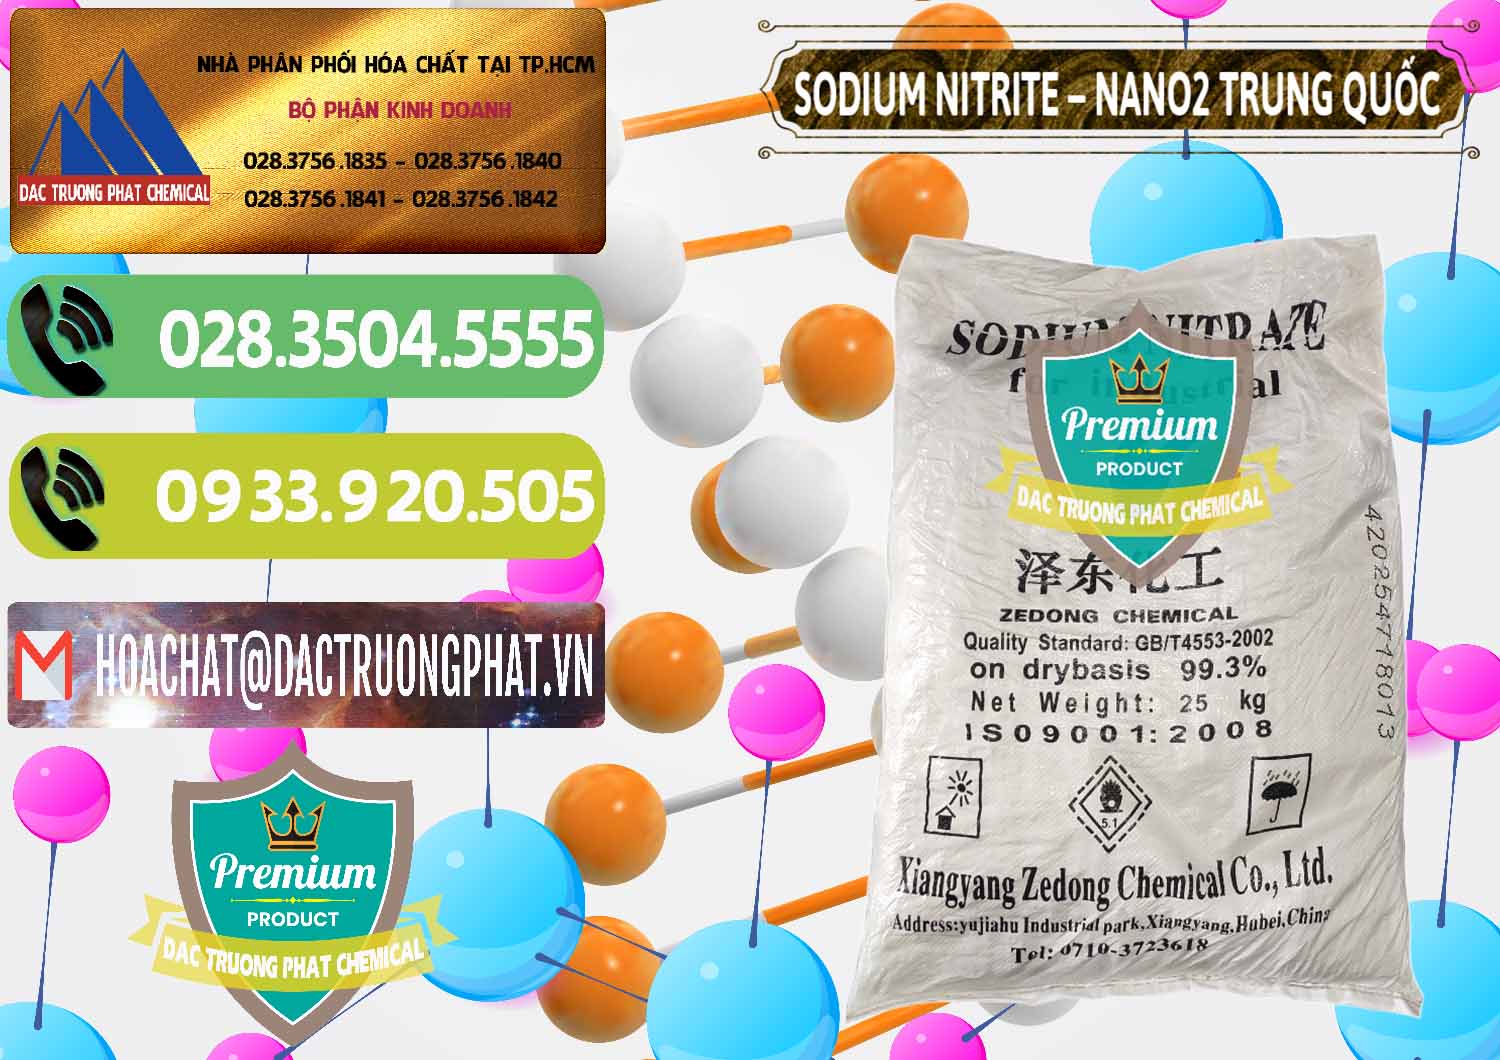 Cty chuyên kinh doanh _ bán Sodium Nitrite - NANO2 Zedong Trung Quốc China - 0149 - Nơi chuyên kinh doanh ( cung cấp ) hóa chất tại TP.HCM - hoachatmientay.vn